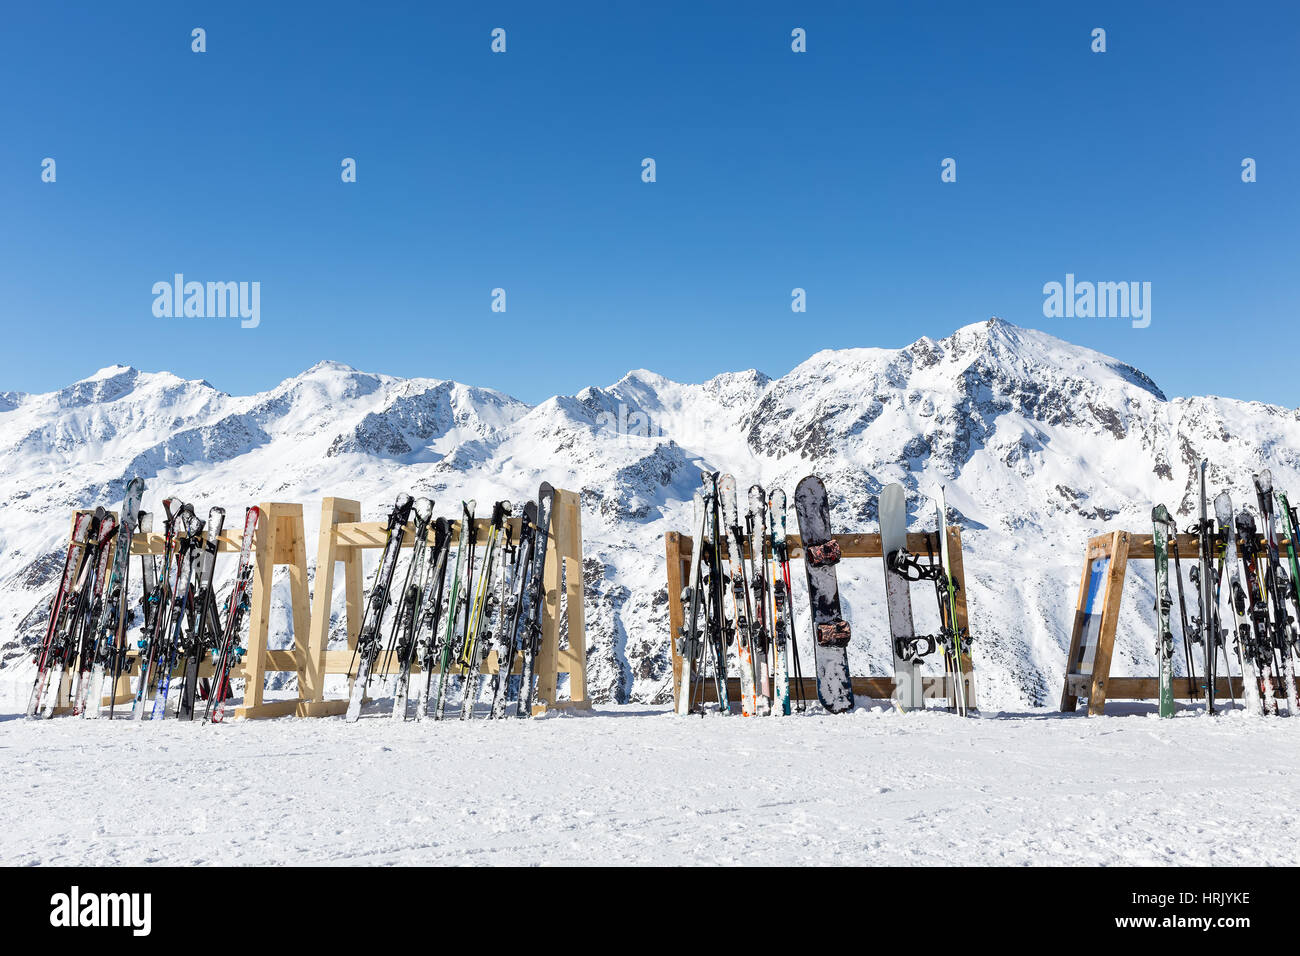 Una linea di sci e snowboard memorizzati su rack al di fuori di un cafe sui pendii a Hochgurgl con le Alpi Otztal in background. Tutti branding e loghi Foto Stock